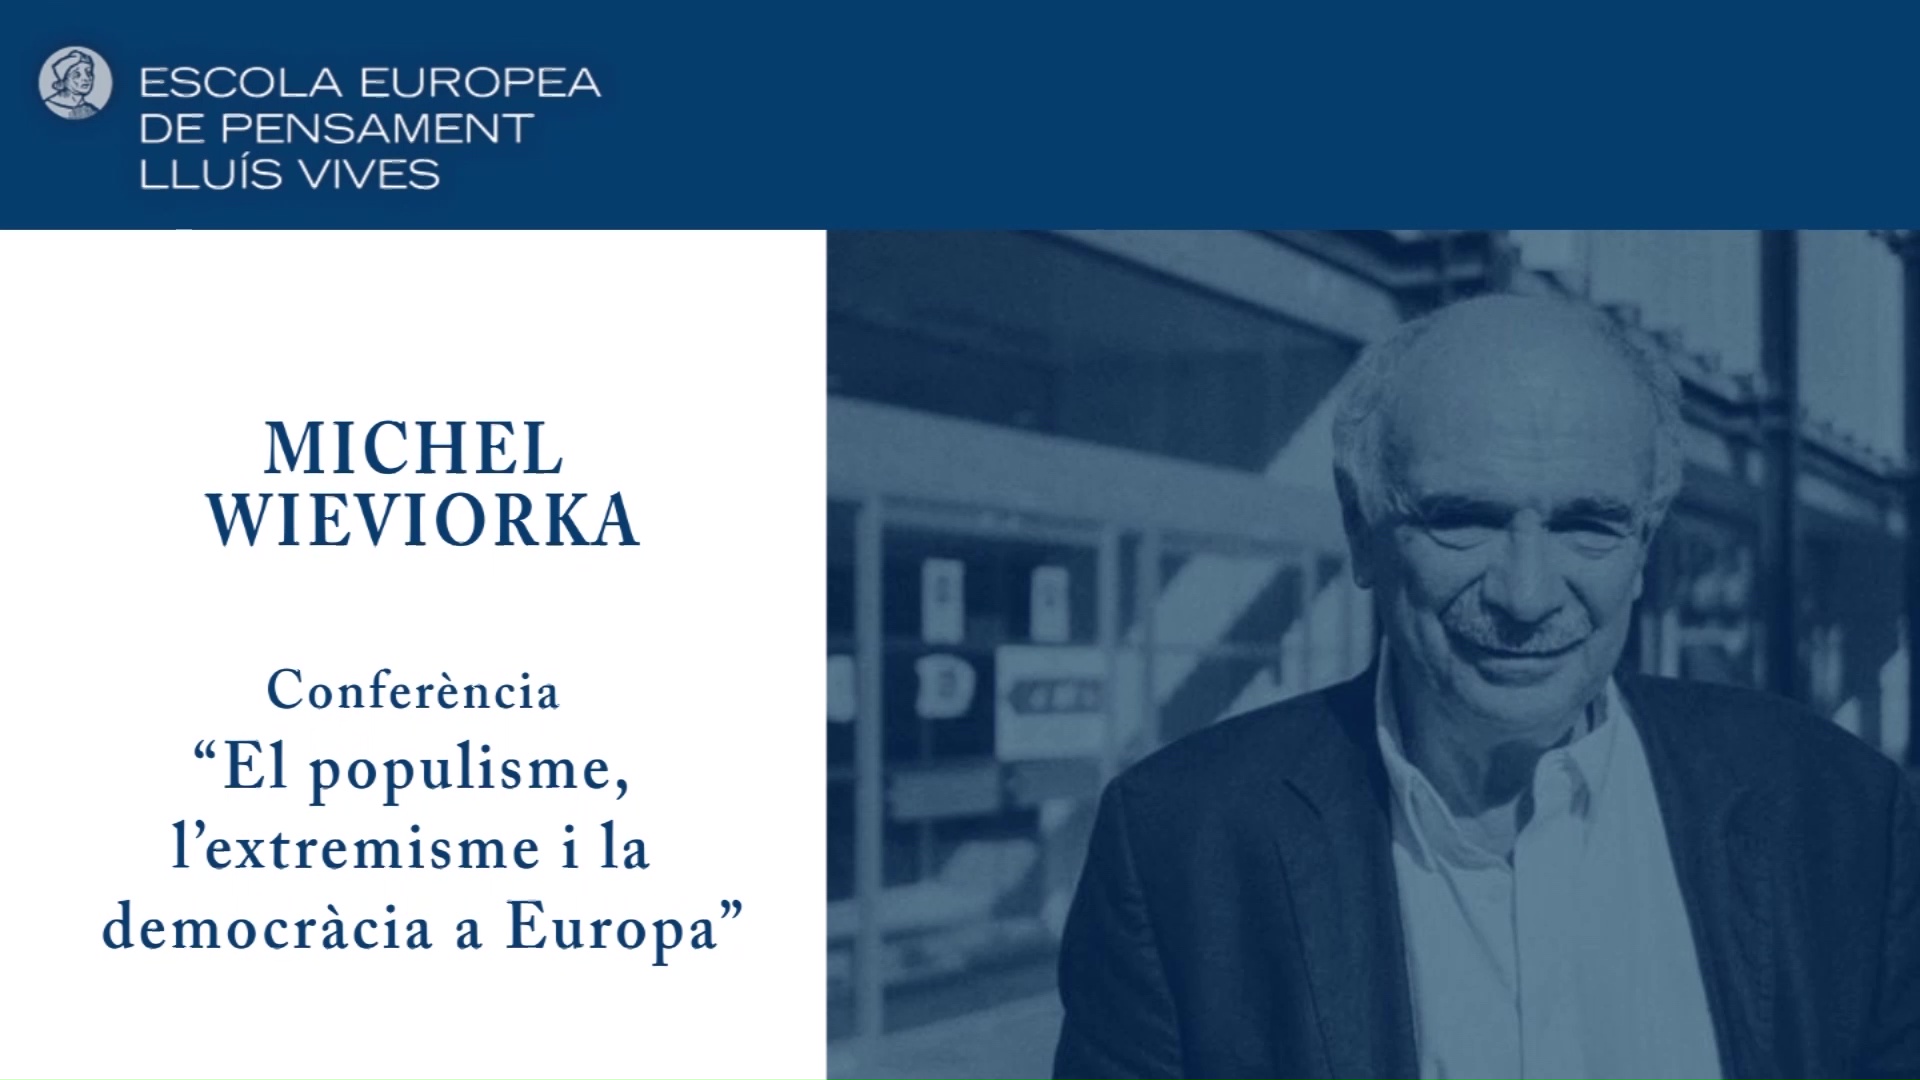 Conferència 'El populisme, l’extremisme i la democràcia a Europa' a càrrec de Michel Wieviorka.